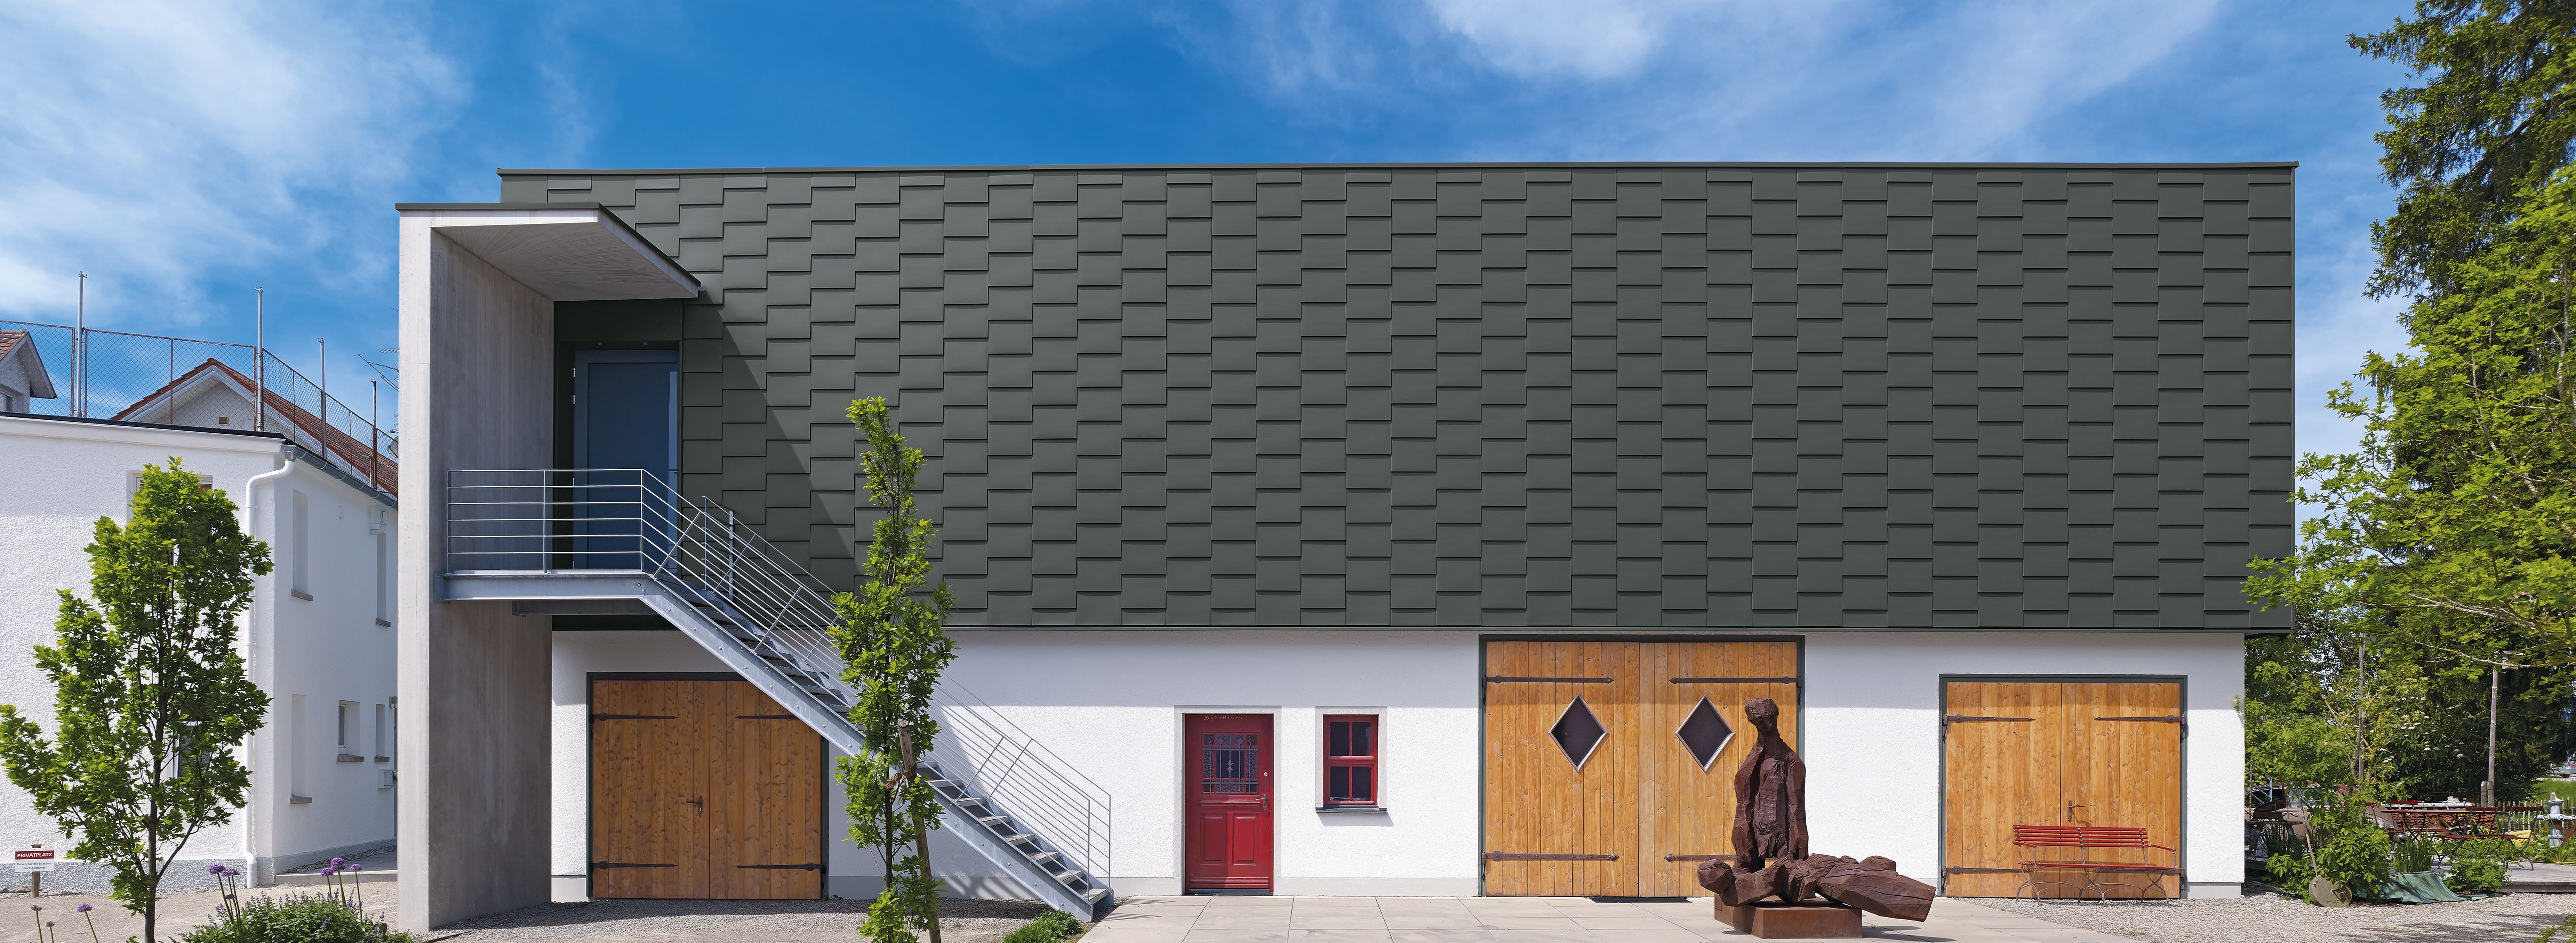 RHEINZINK roofing - flat lock tiles